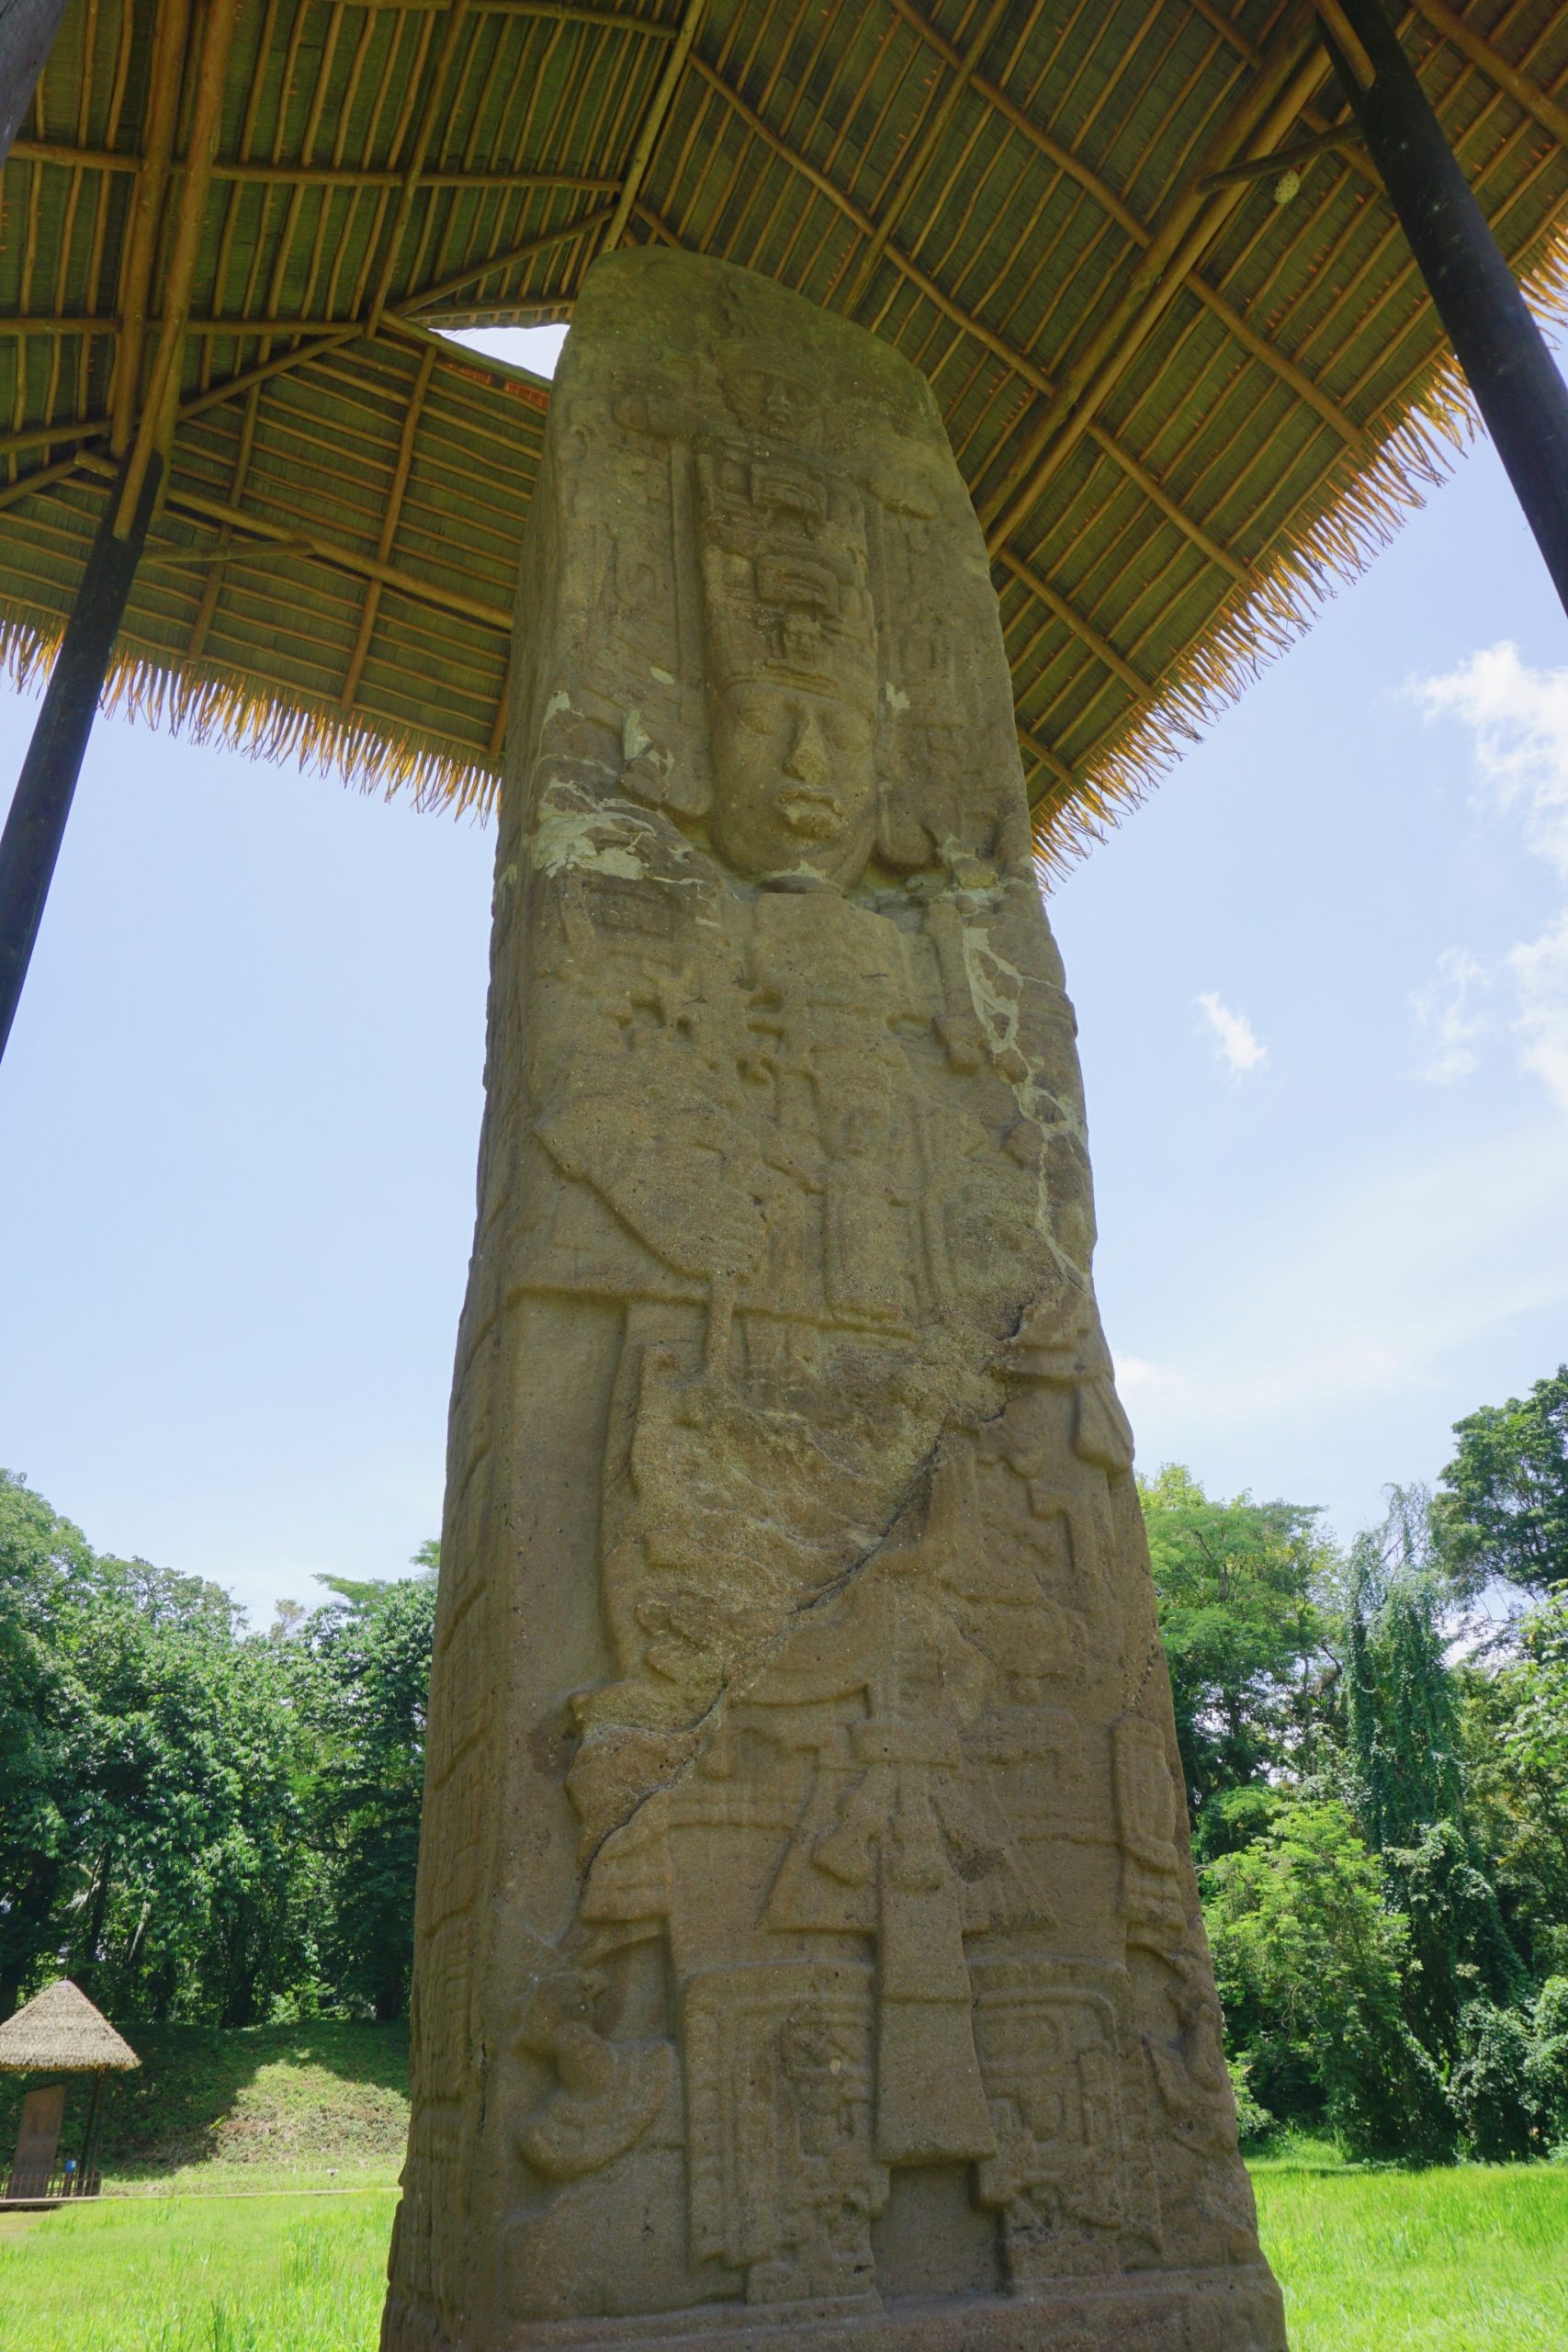 Quirigua stela in Guatemala